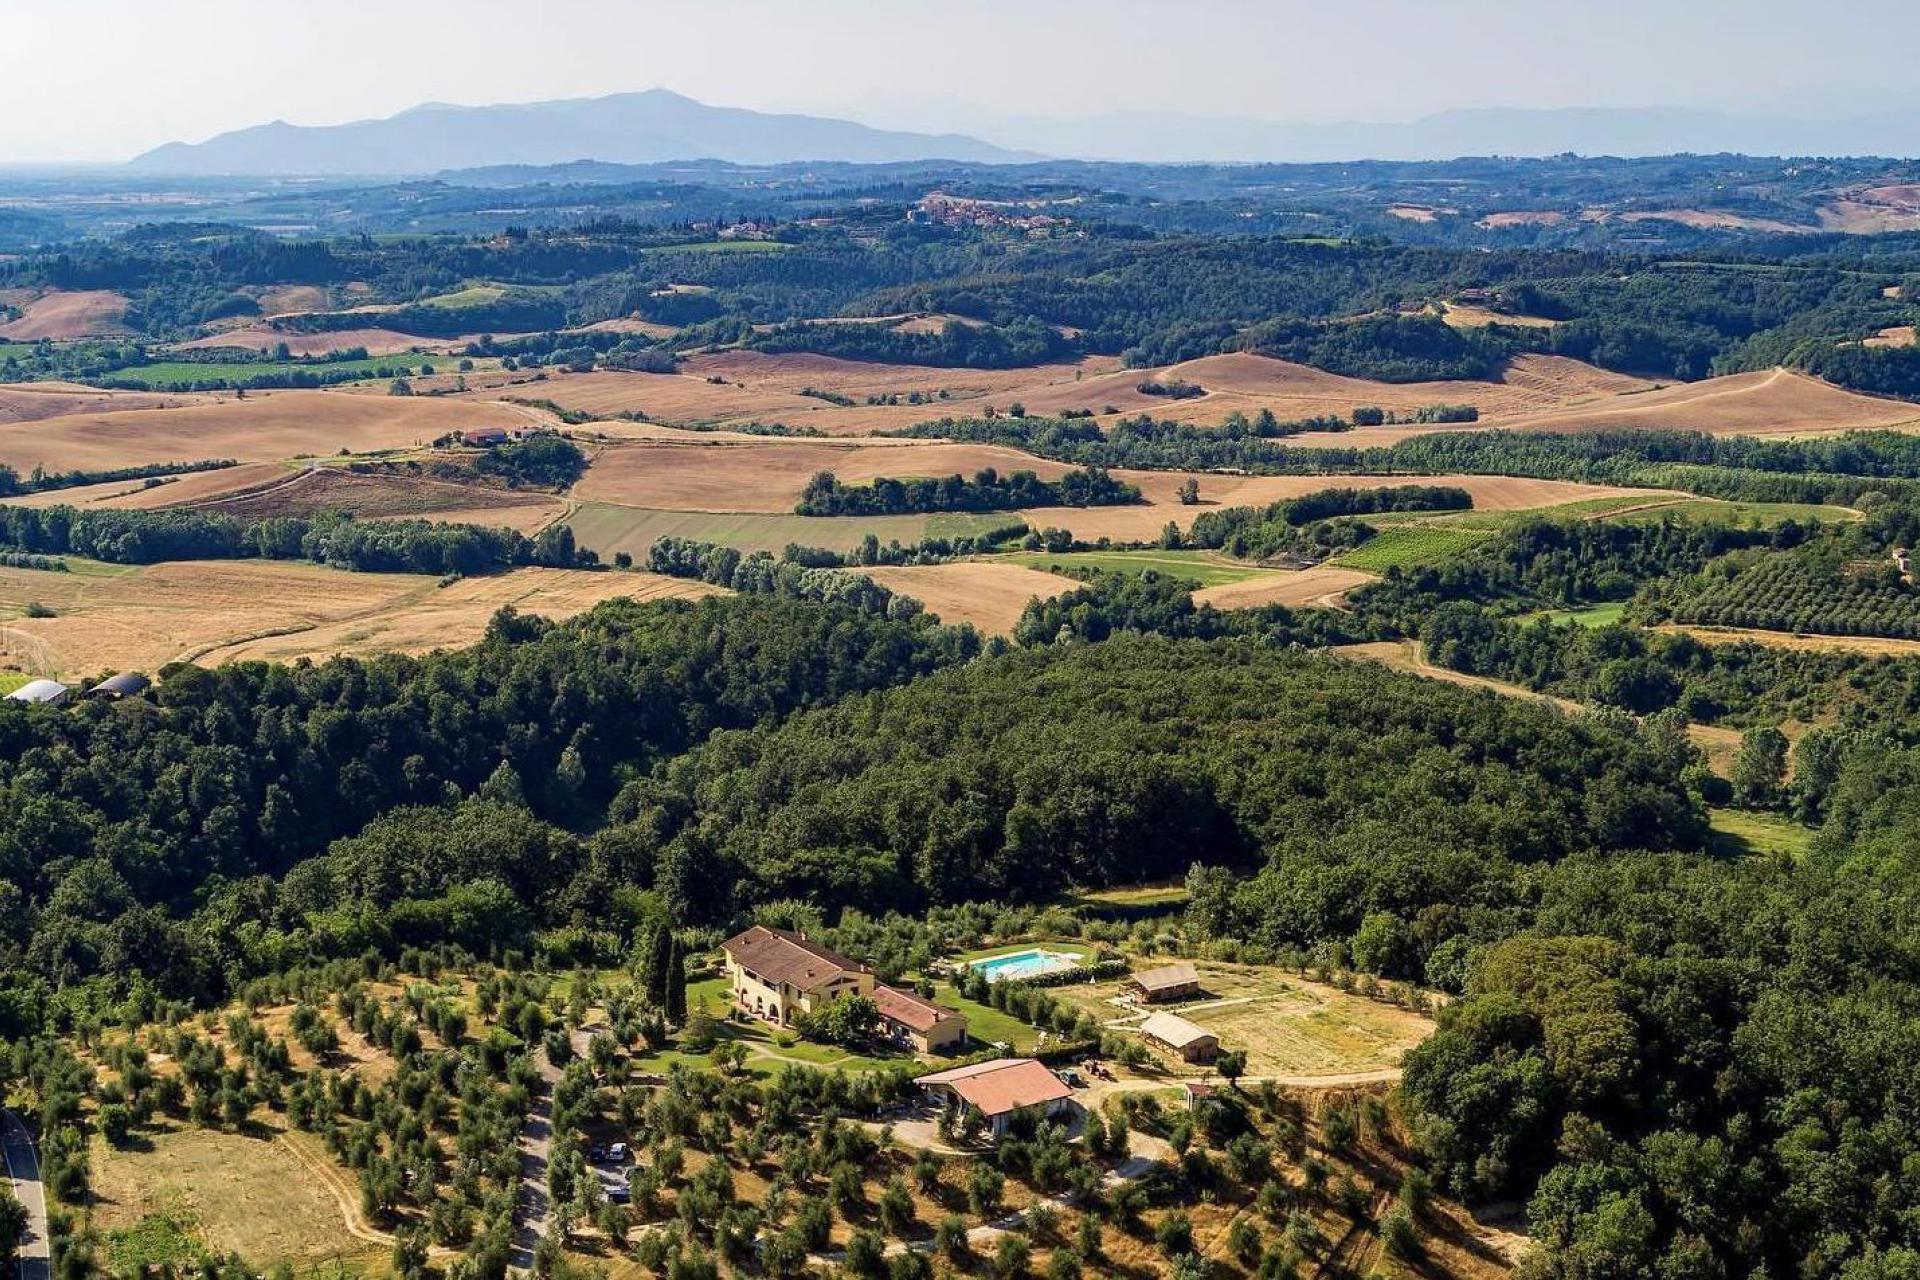 Agriturismo Toskana, Ferienwohnung oder Glamping, ruhig und inmitten von Weinbergen